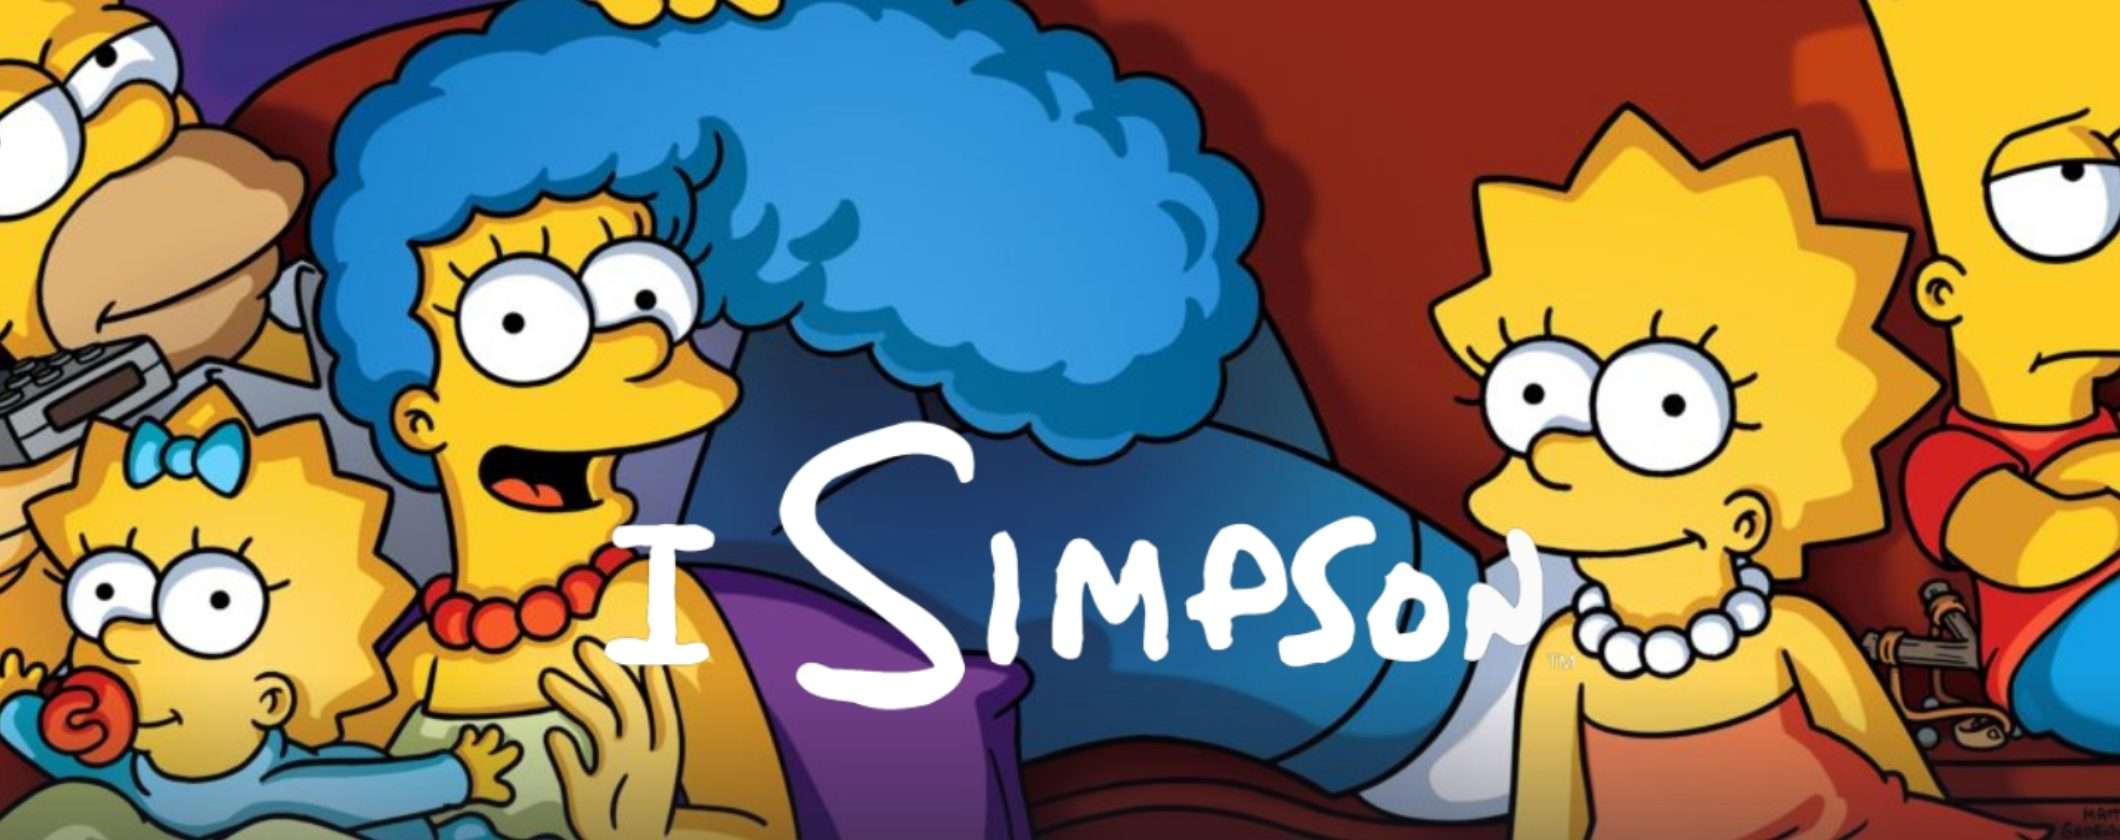 I Simpson: come vedere tutti gli episodi con 2 mesi gratis